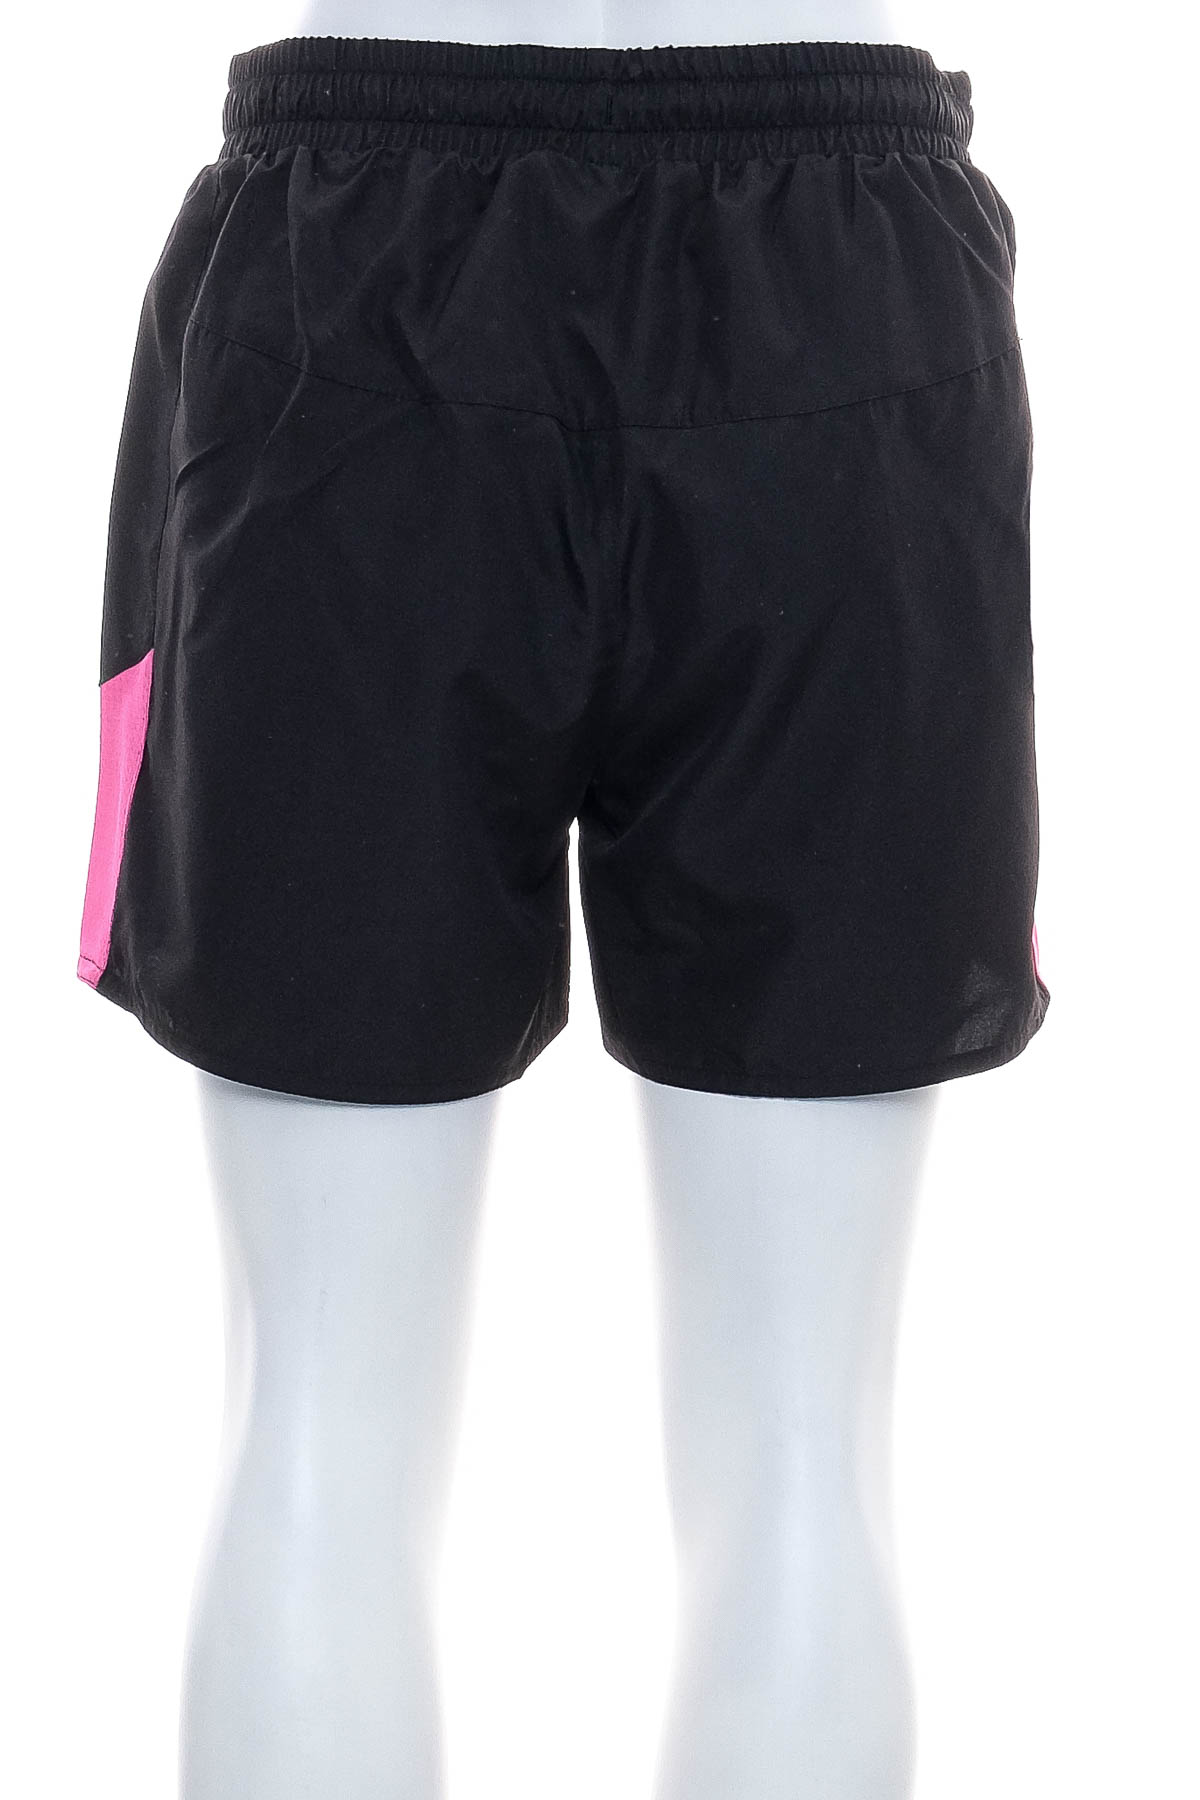 Women's shorts - Karrimor - 1